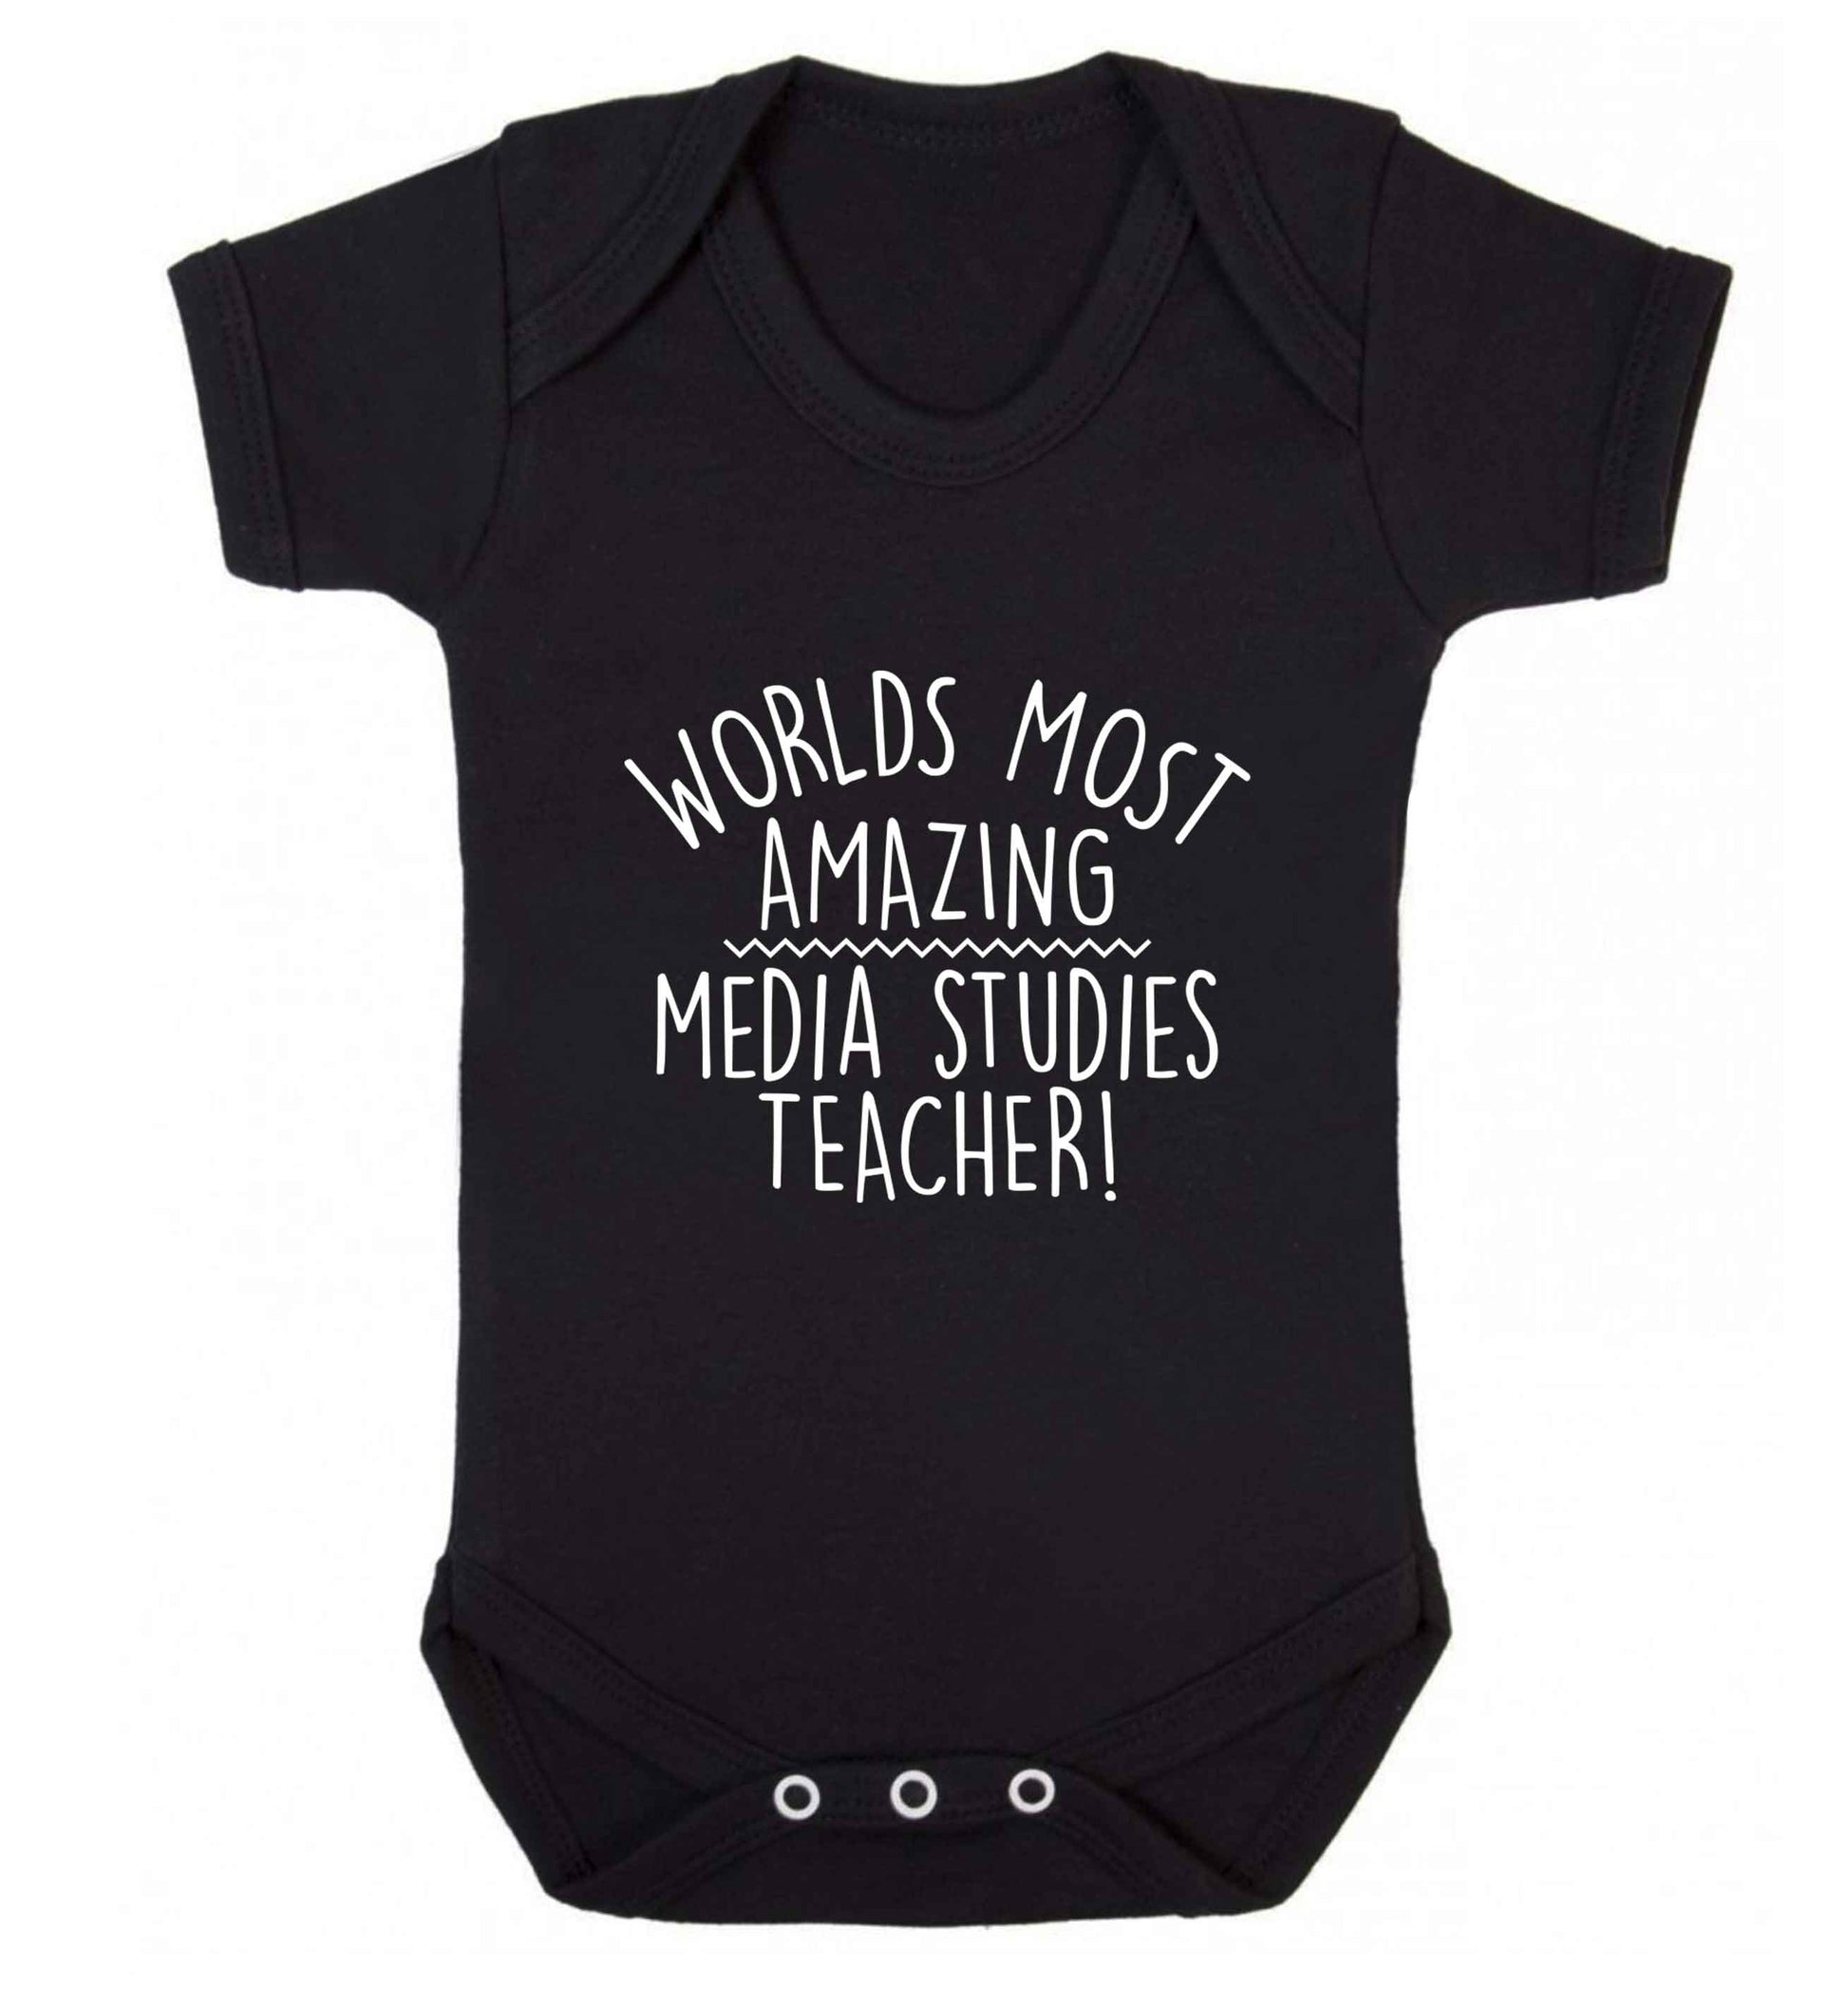 Worlds most amazing media studies teacher baby vest black 18-24 months